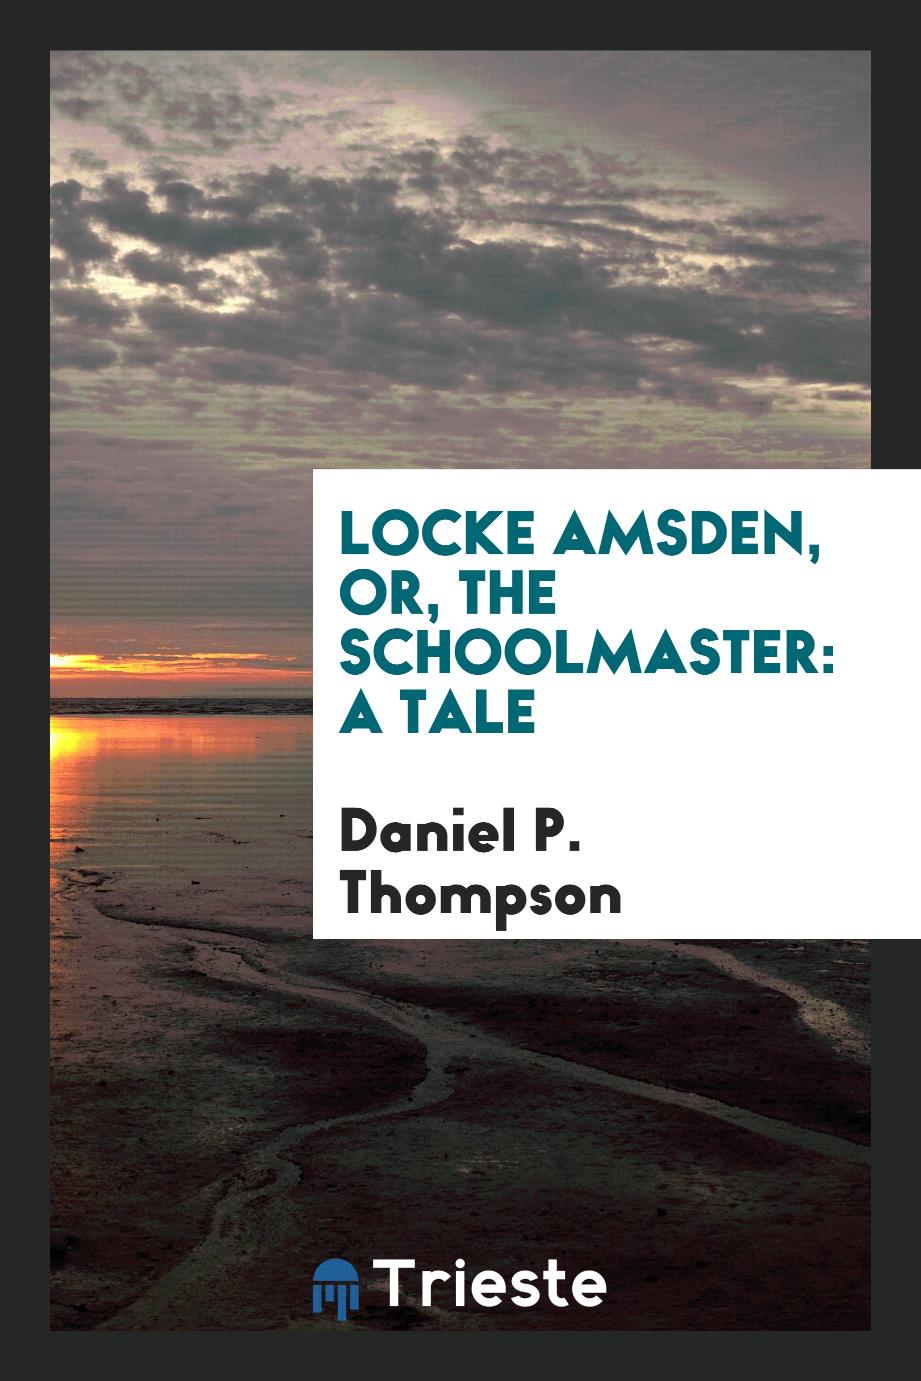 Locke Amsden, or, The schoolmaster: a tale